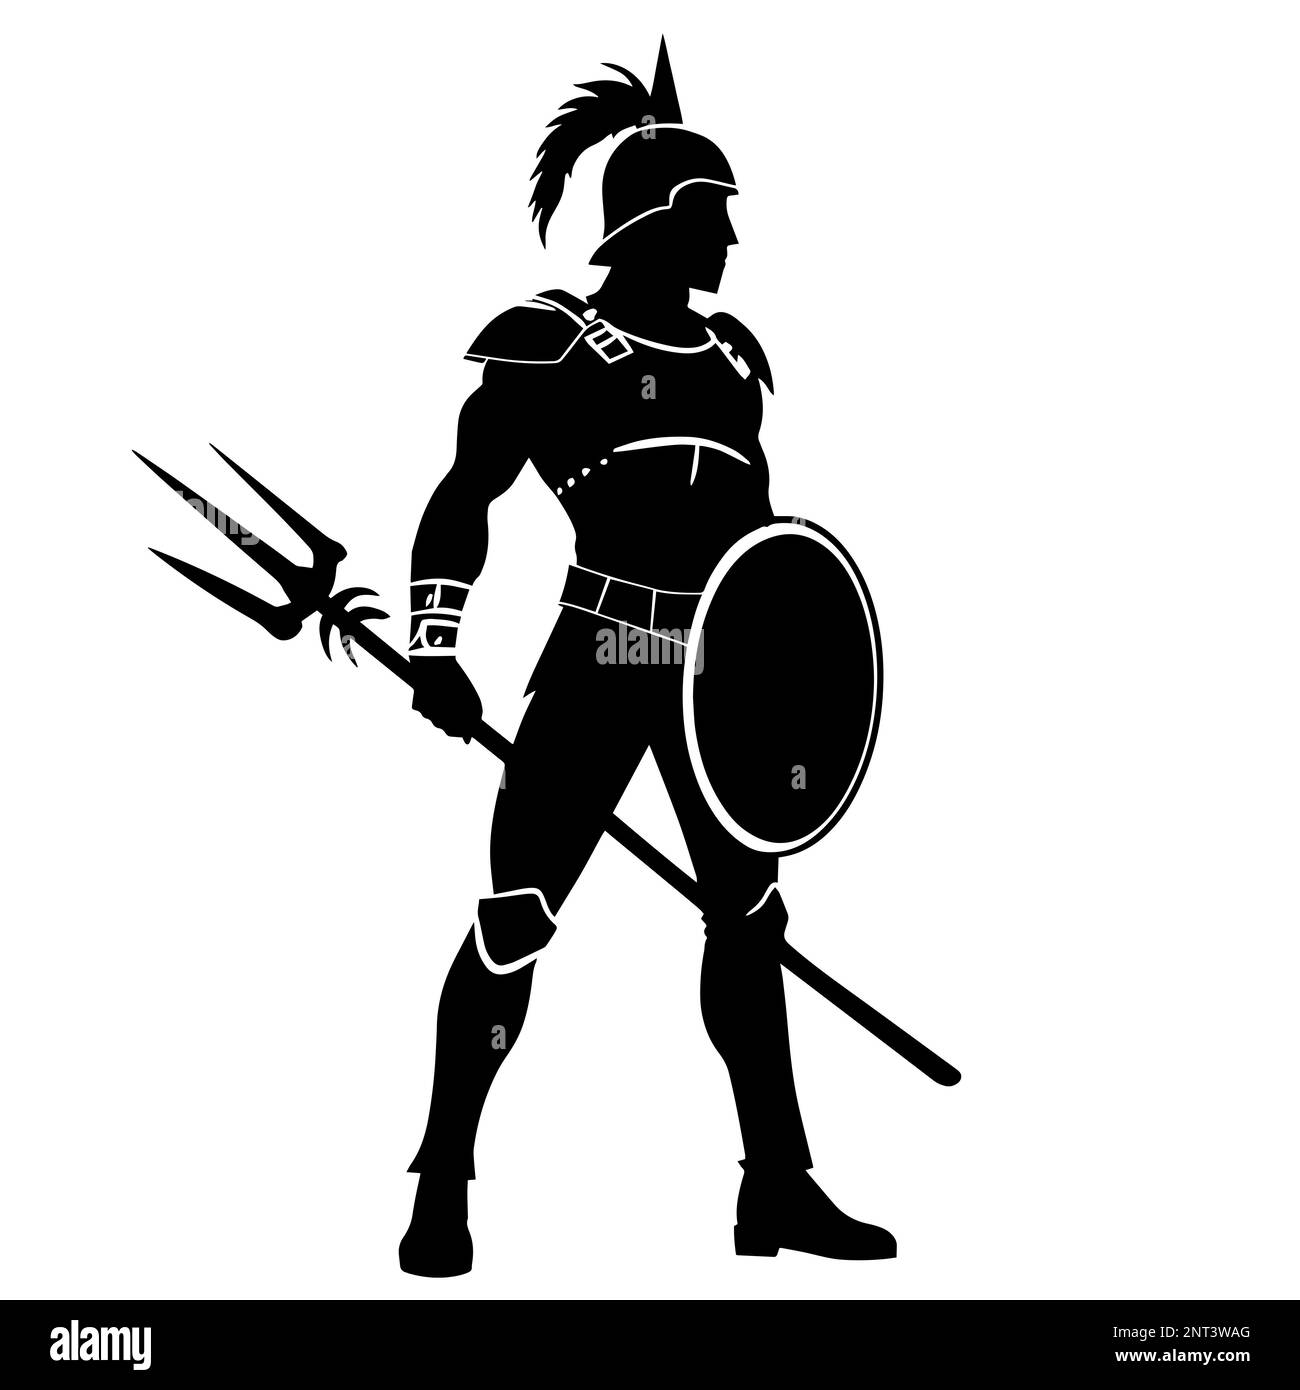 Illustration d'un guerrier spartiate dans un style noir et blanc monochrome saisissant, évoquant un sentiment de puissance Banque D'Images